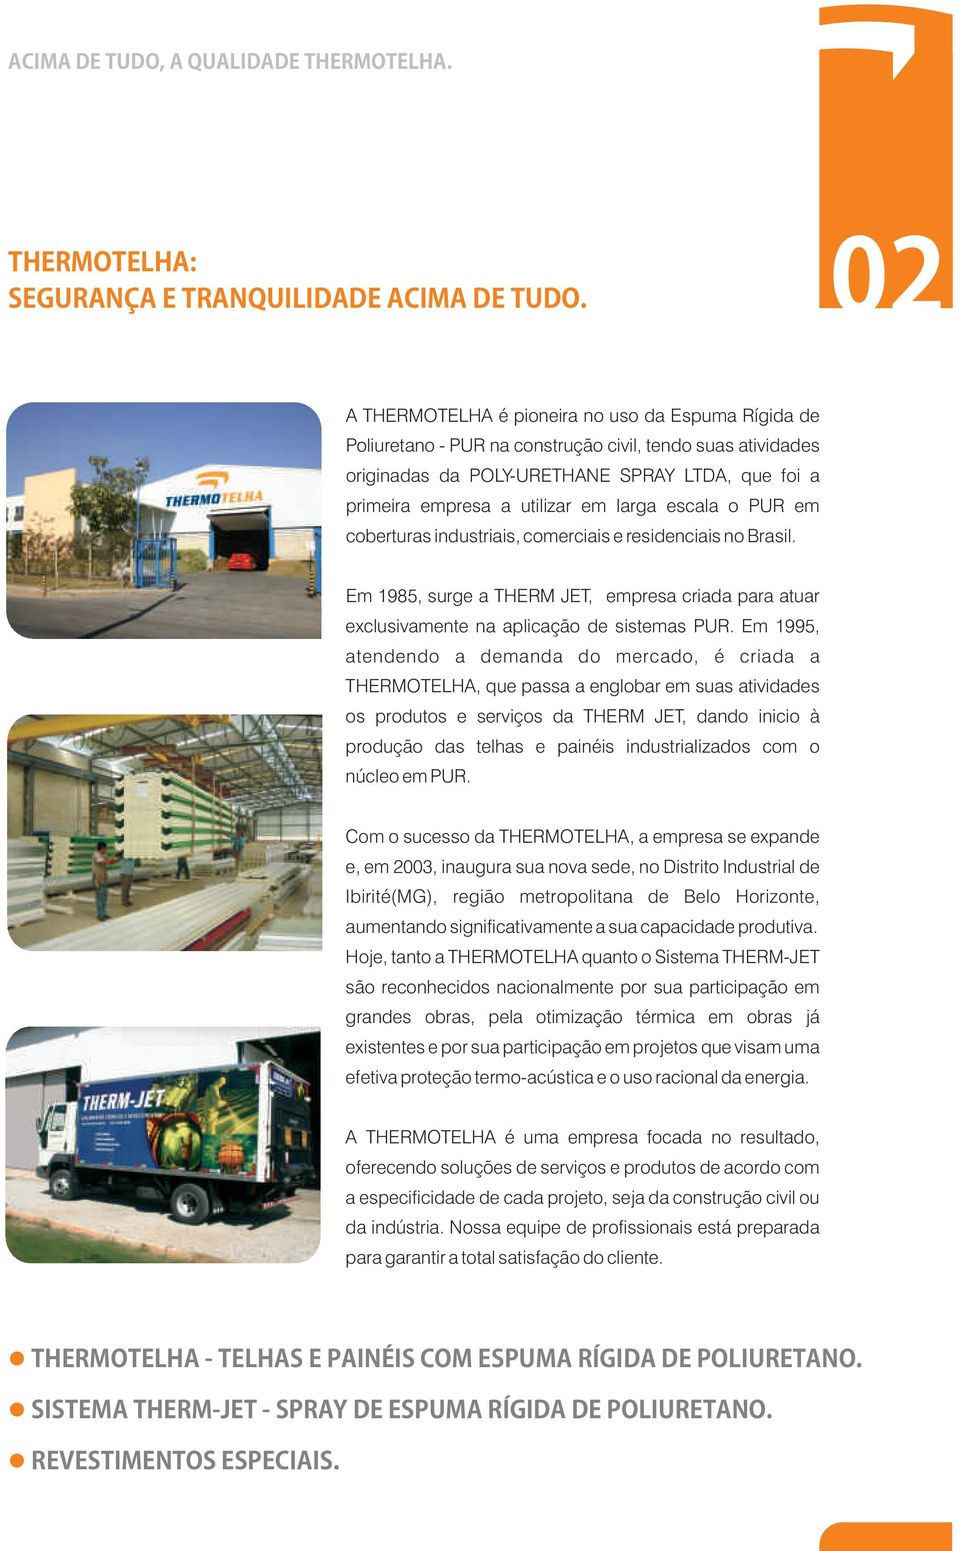 larga escala o PUR em coberturas industriais, comerciais e residenciais no Brasil. Em 1985, surge a THERM JET, empresa criada para atuar exclusivamente na aplicação de sistemas PUR.